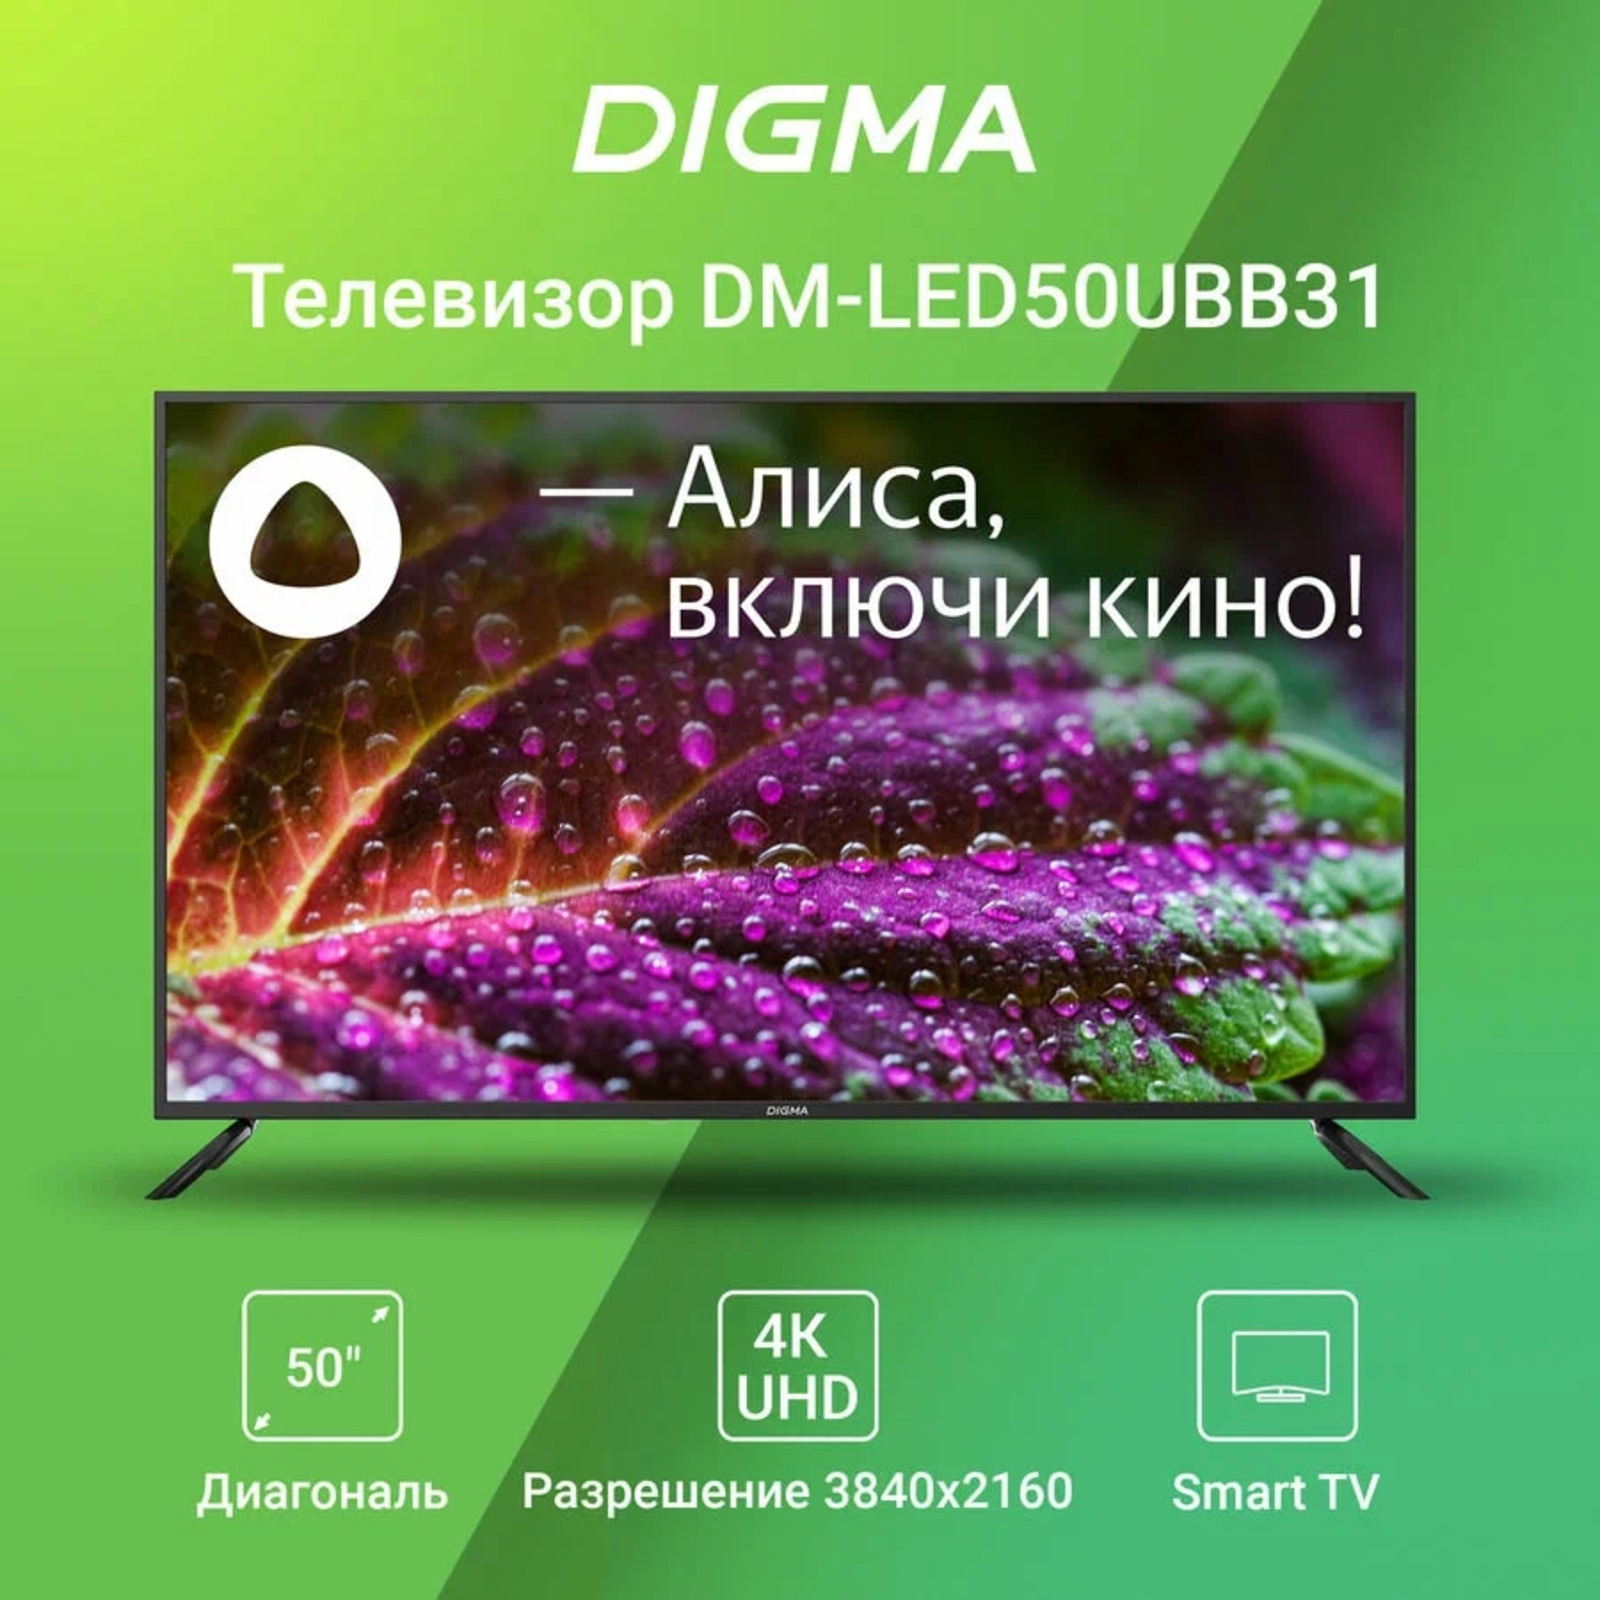 Телевизор Digma DM-LED50UBB31